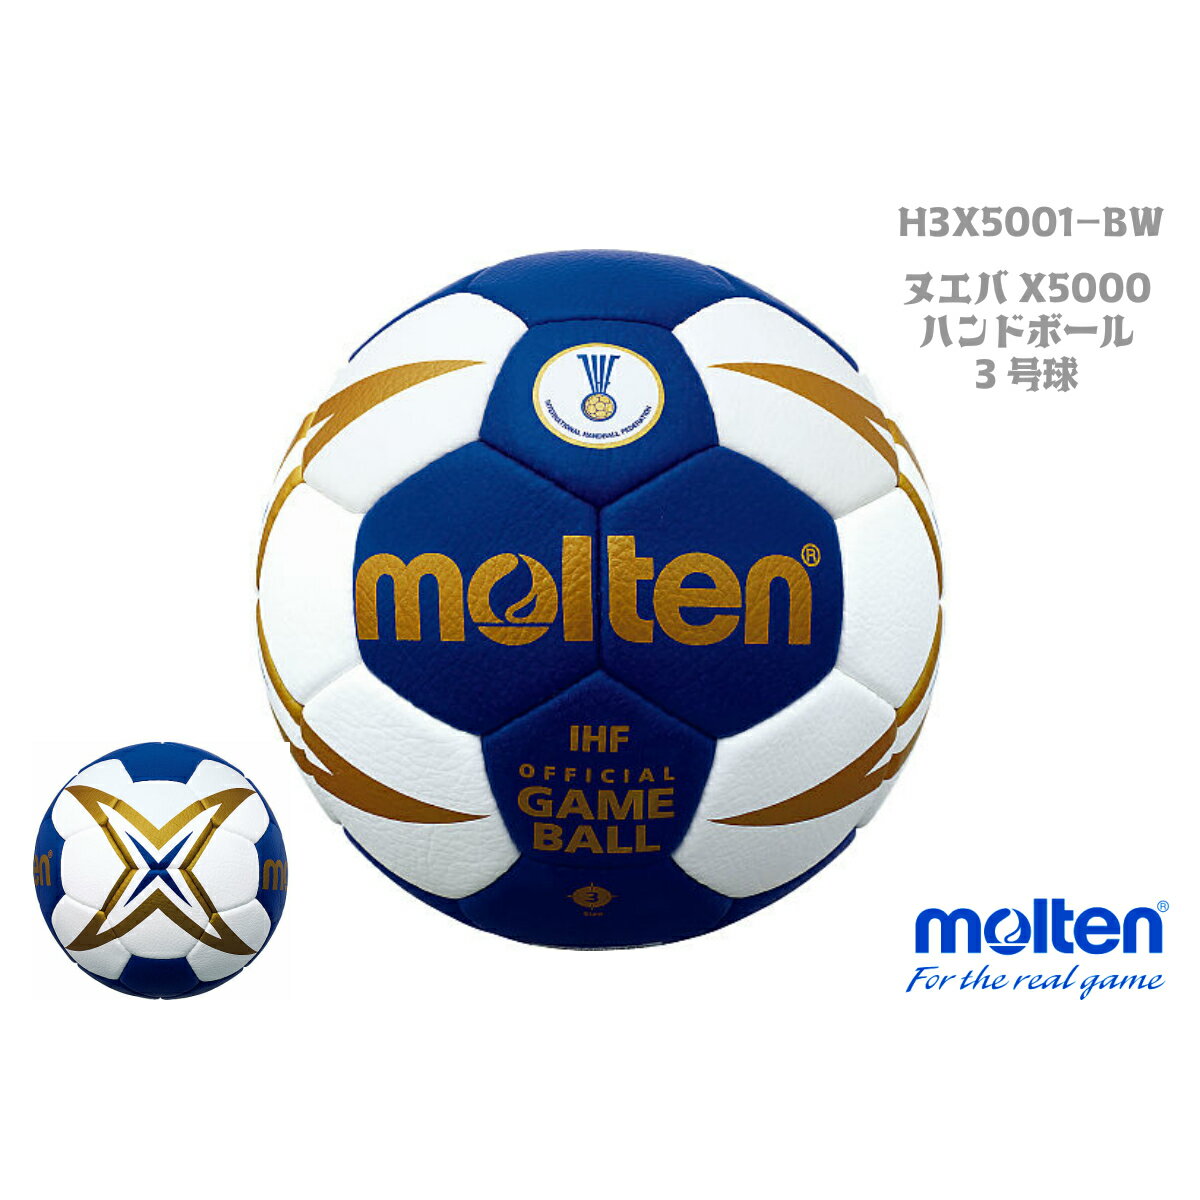 モルテン molten ヌエバX5000 3号球 国際公認球